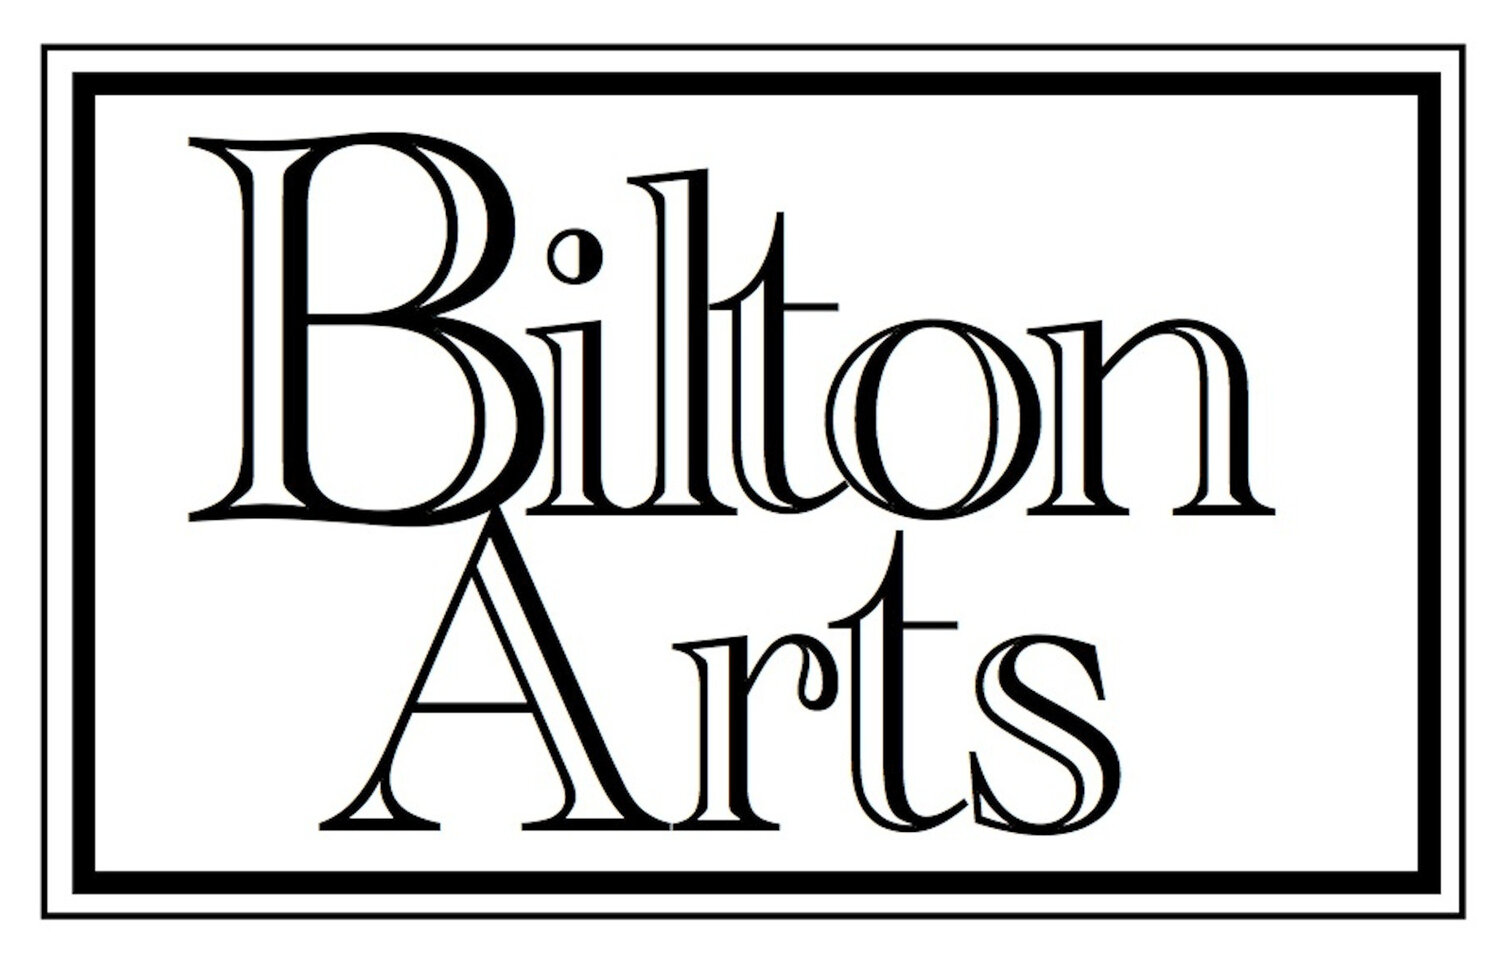 Bilton Arts Studios